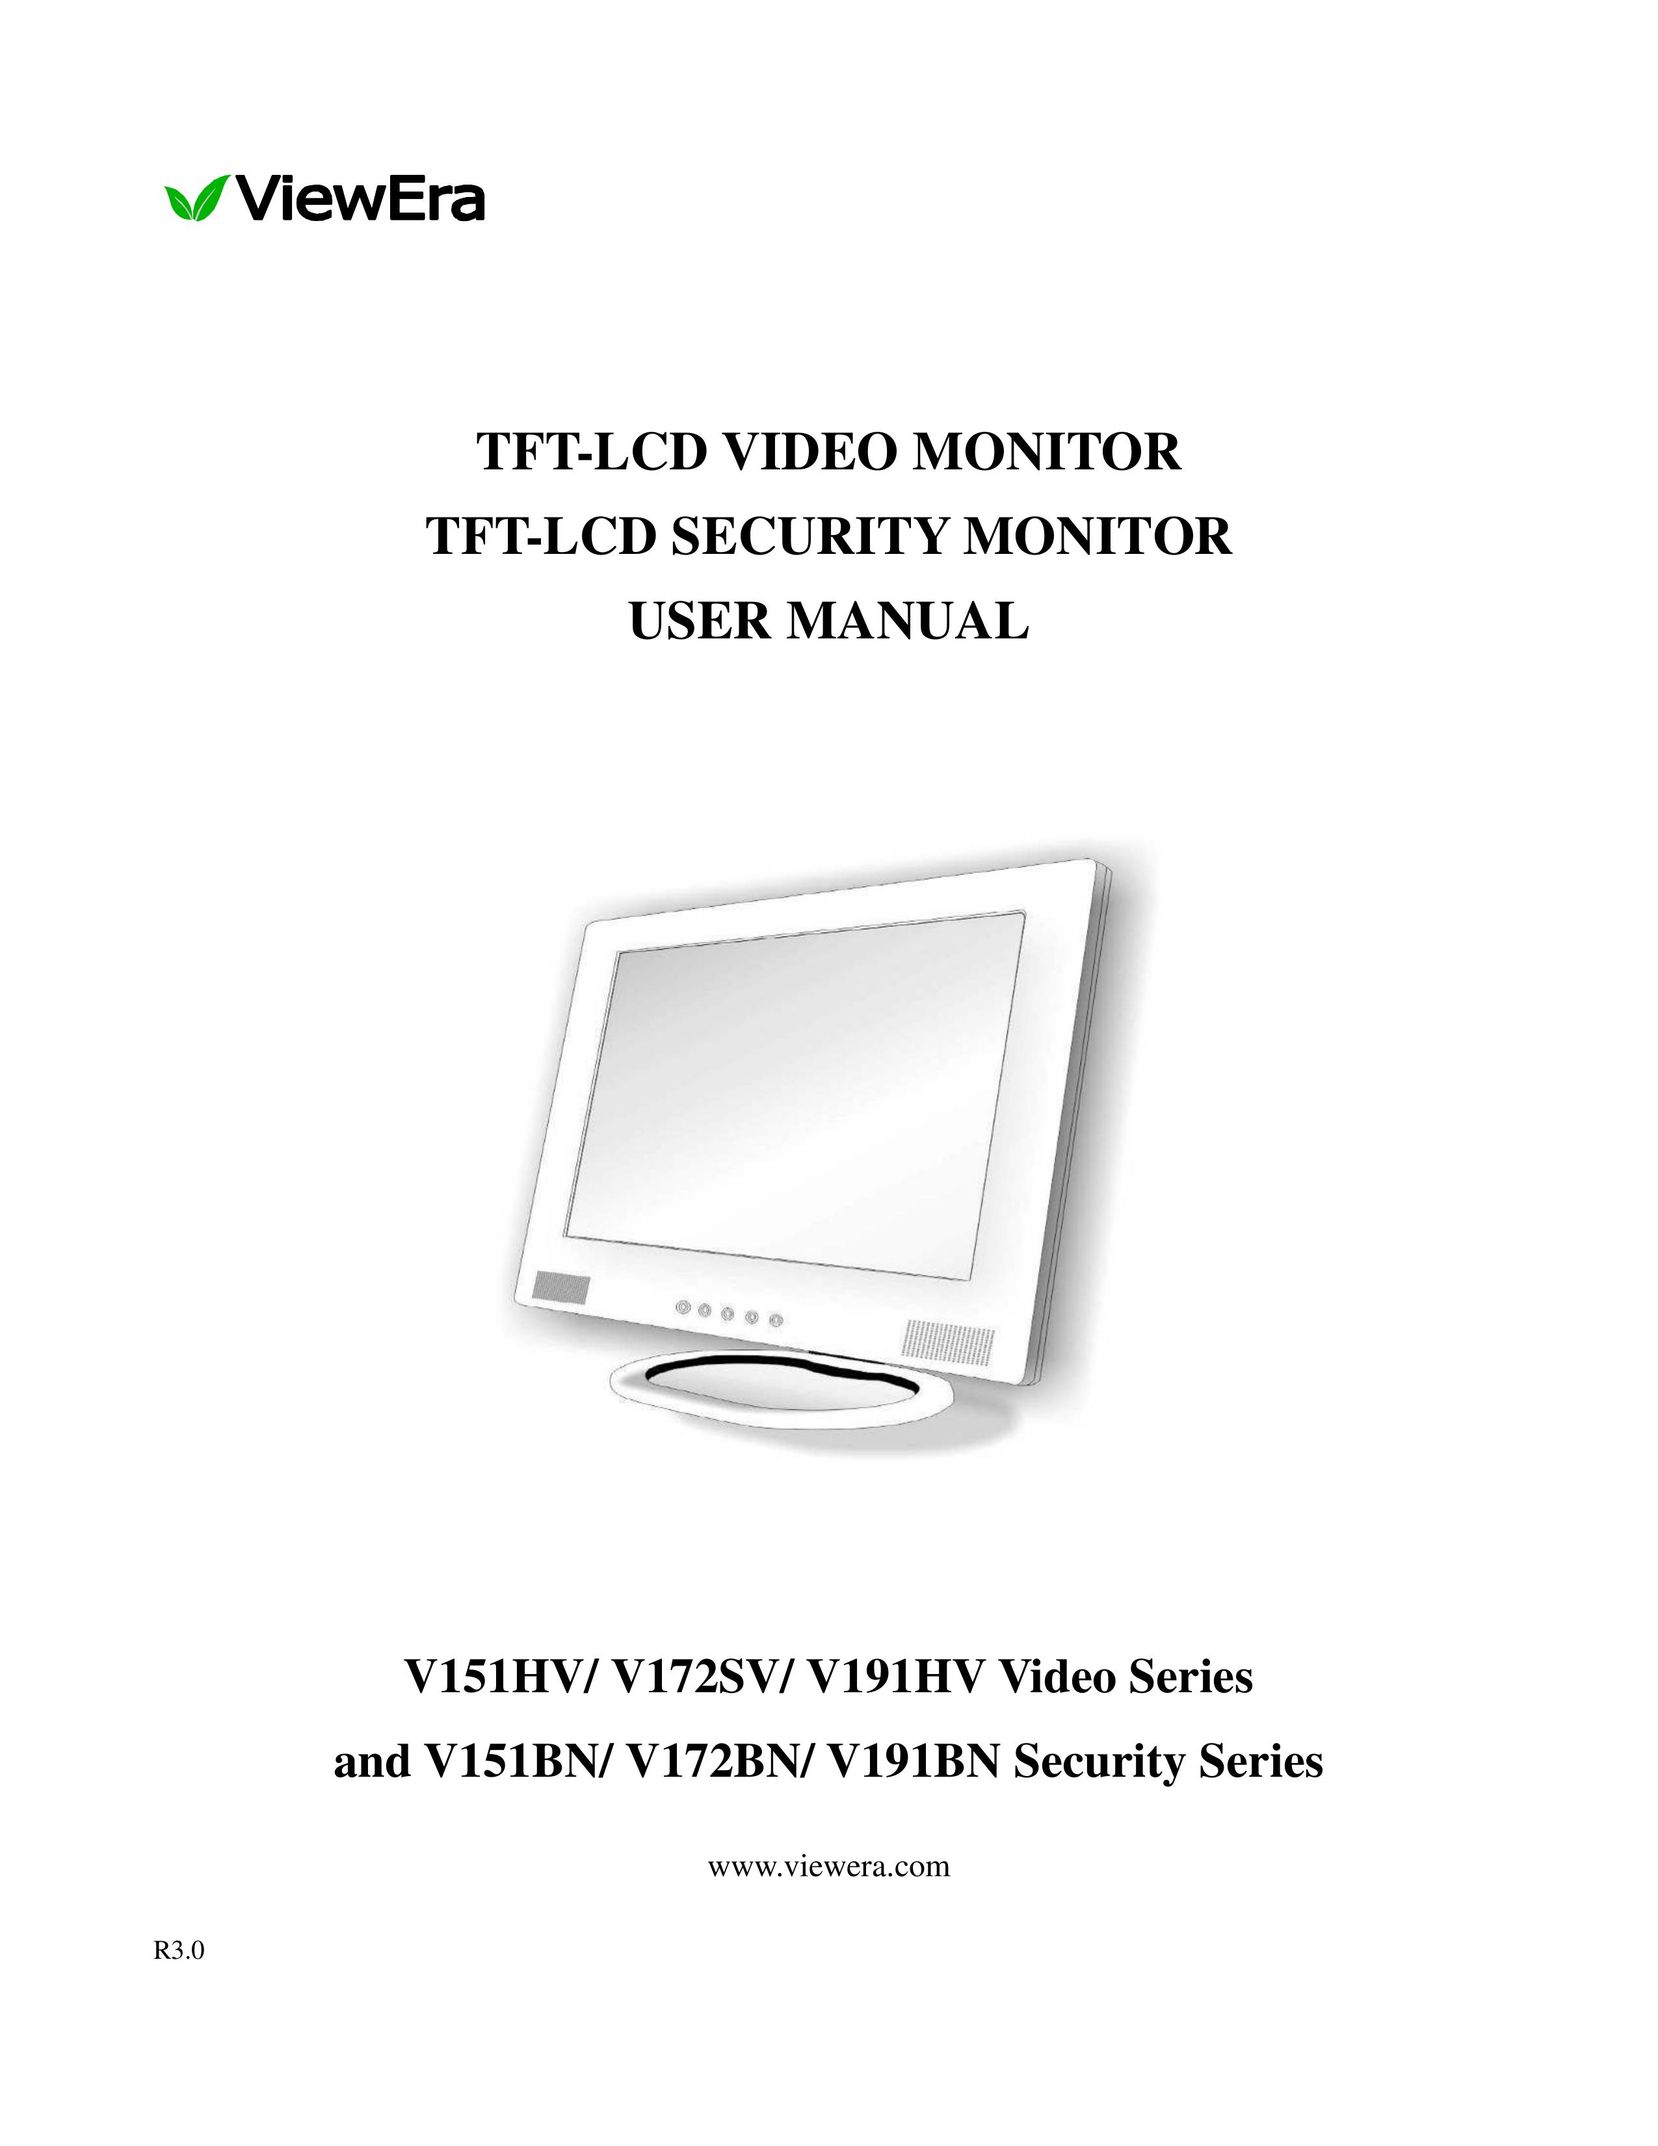 ViewEra V172SV Computer Monitor User Manual